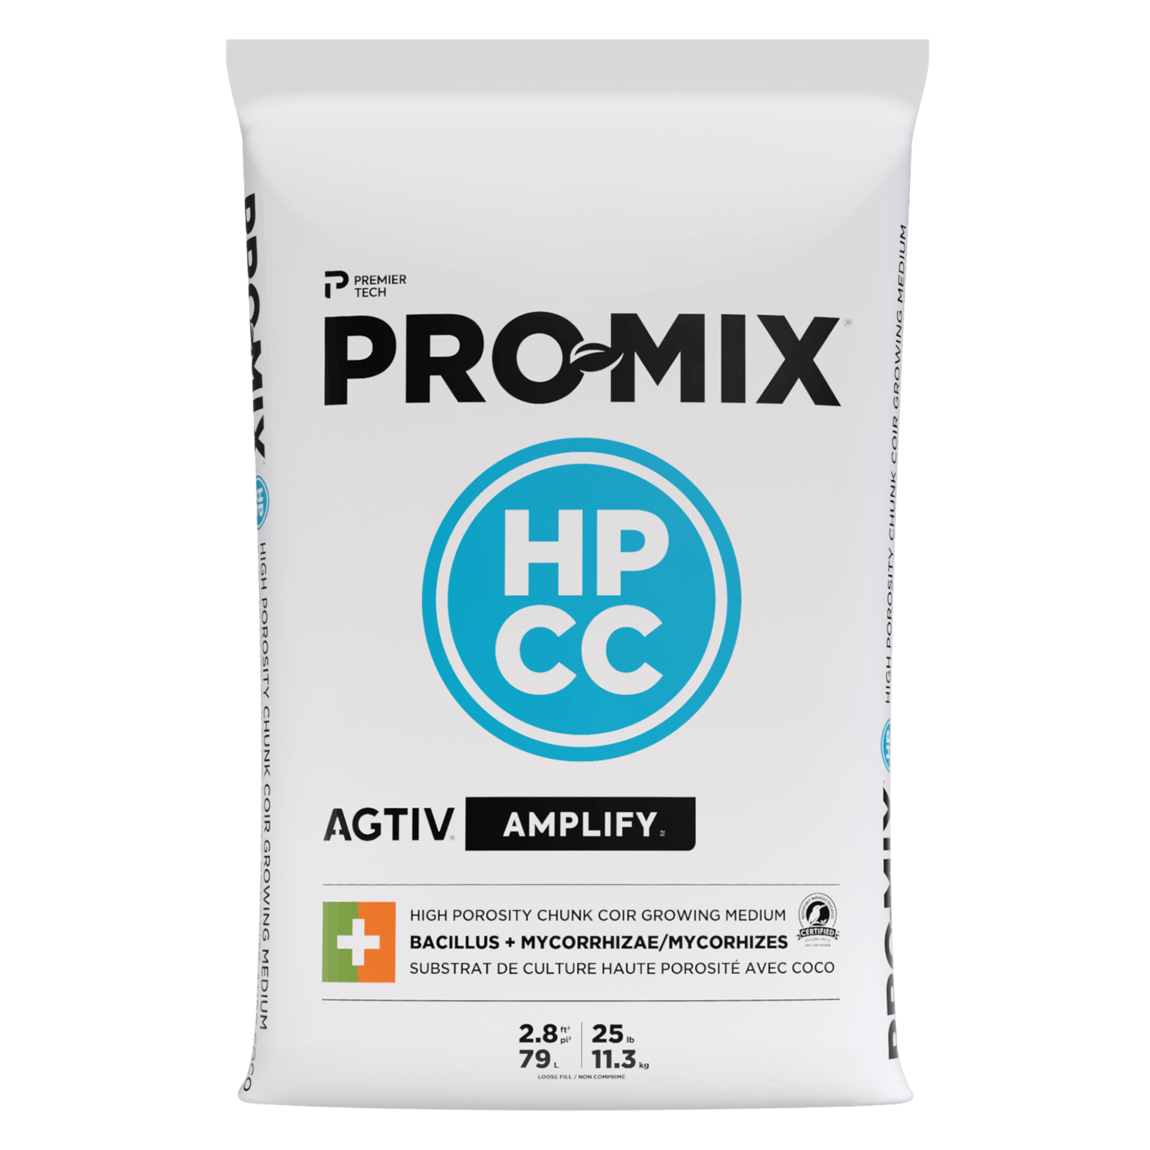 PRO-MIX HPCC AGTIV AMPLIFY